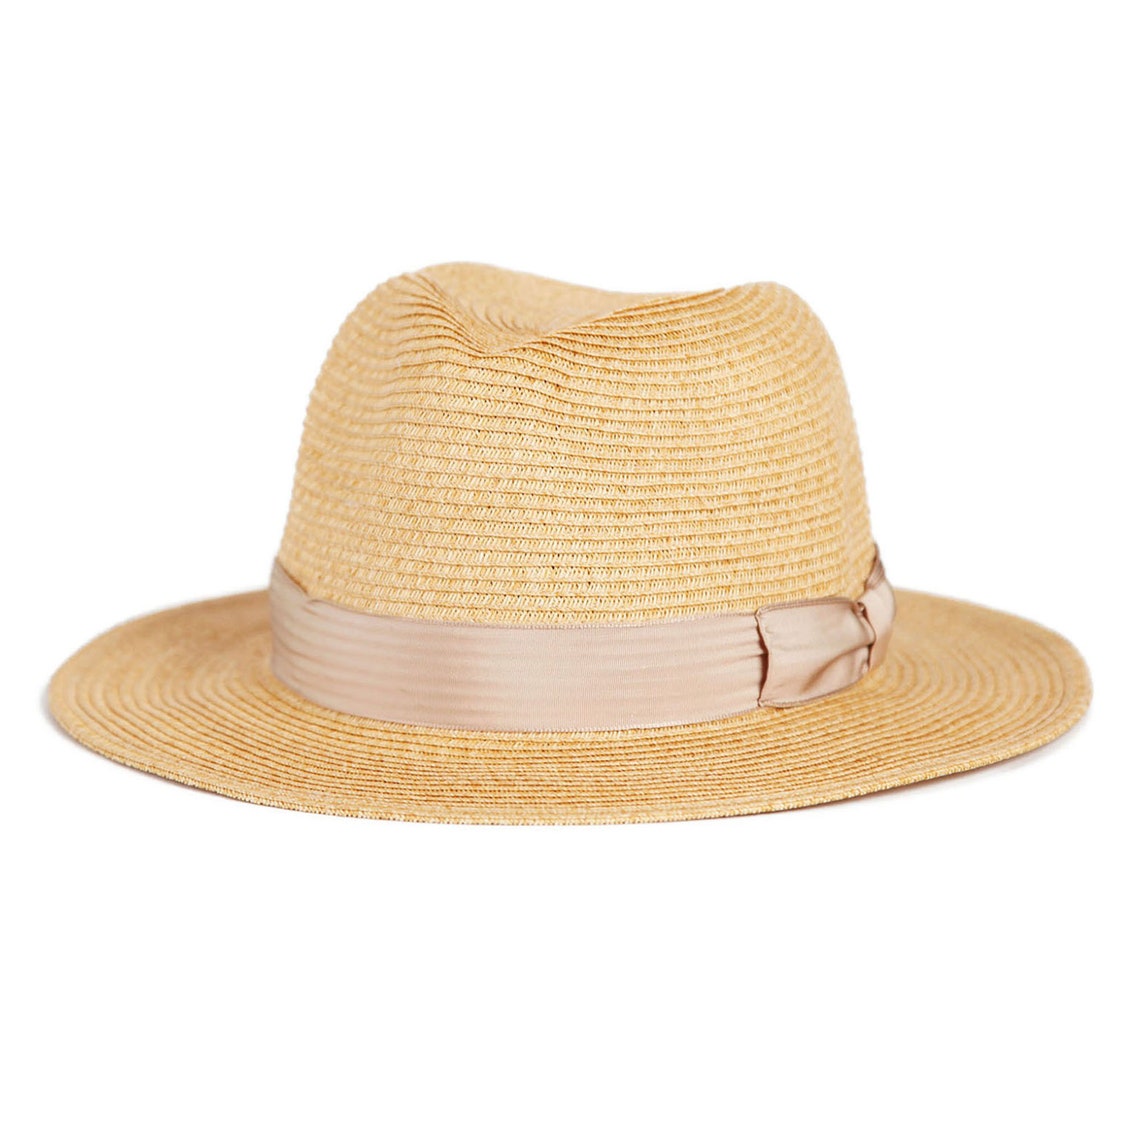 Mossant Paris Adria Panana hats Fedora hats Straw hats | Etsy